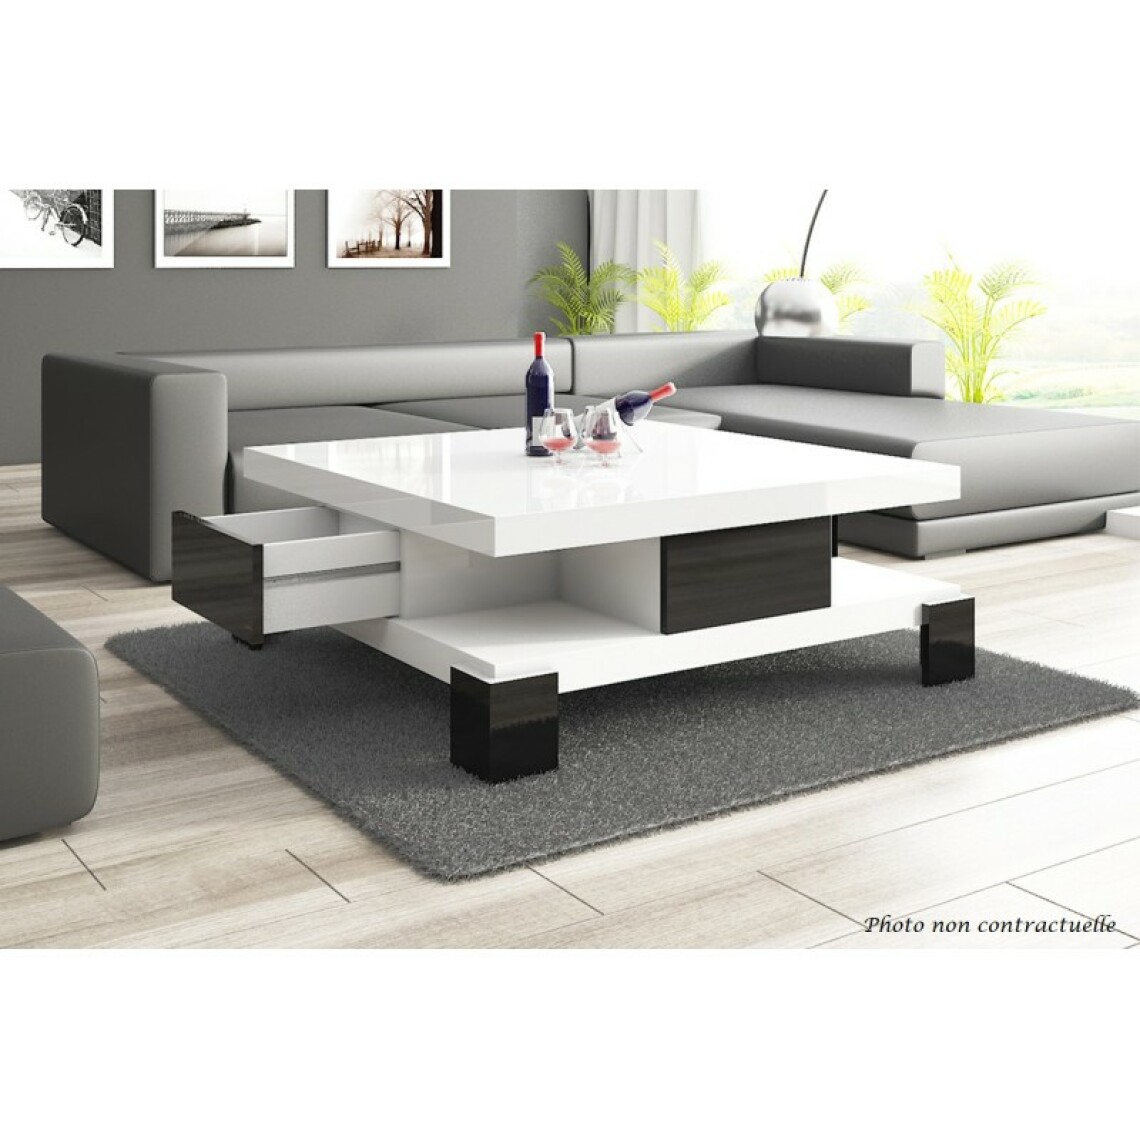 Carellia - Table basse design 105 cm x 105 cm x 40 cm - Blanc/Noir - Tables basses